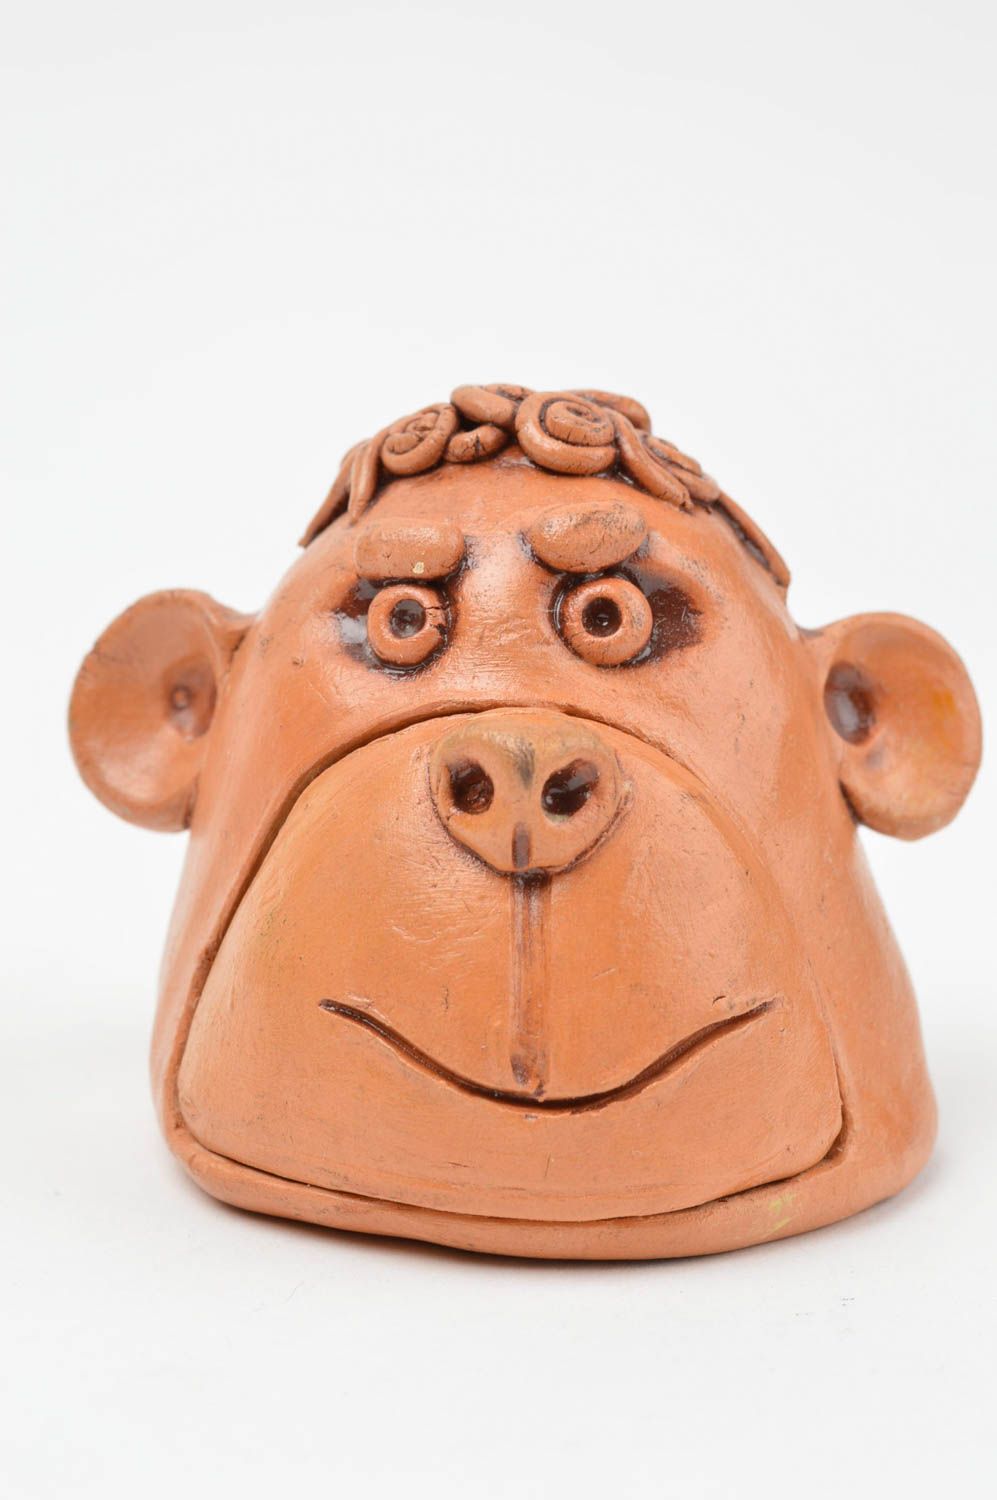 Авторская керамическая шкатулка ручной работы в форме обезьяны из красной глины фото 2